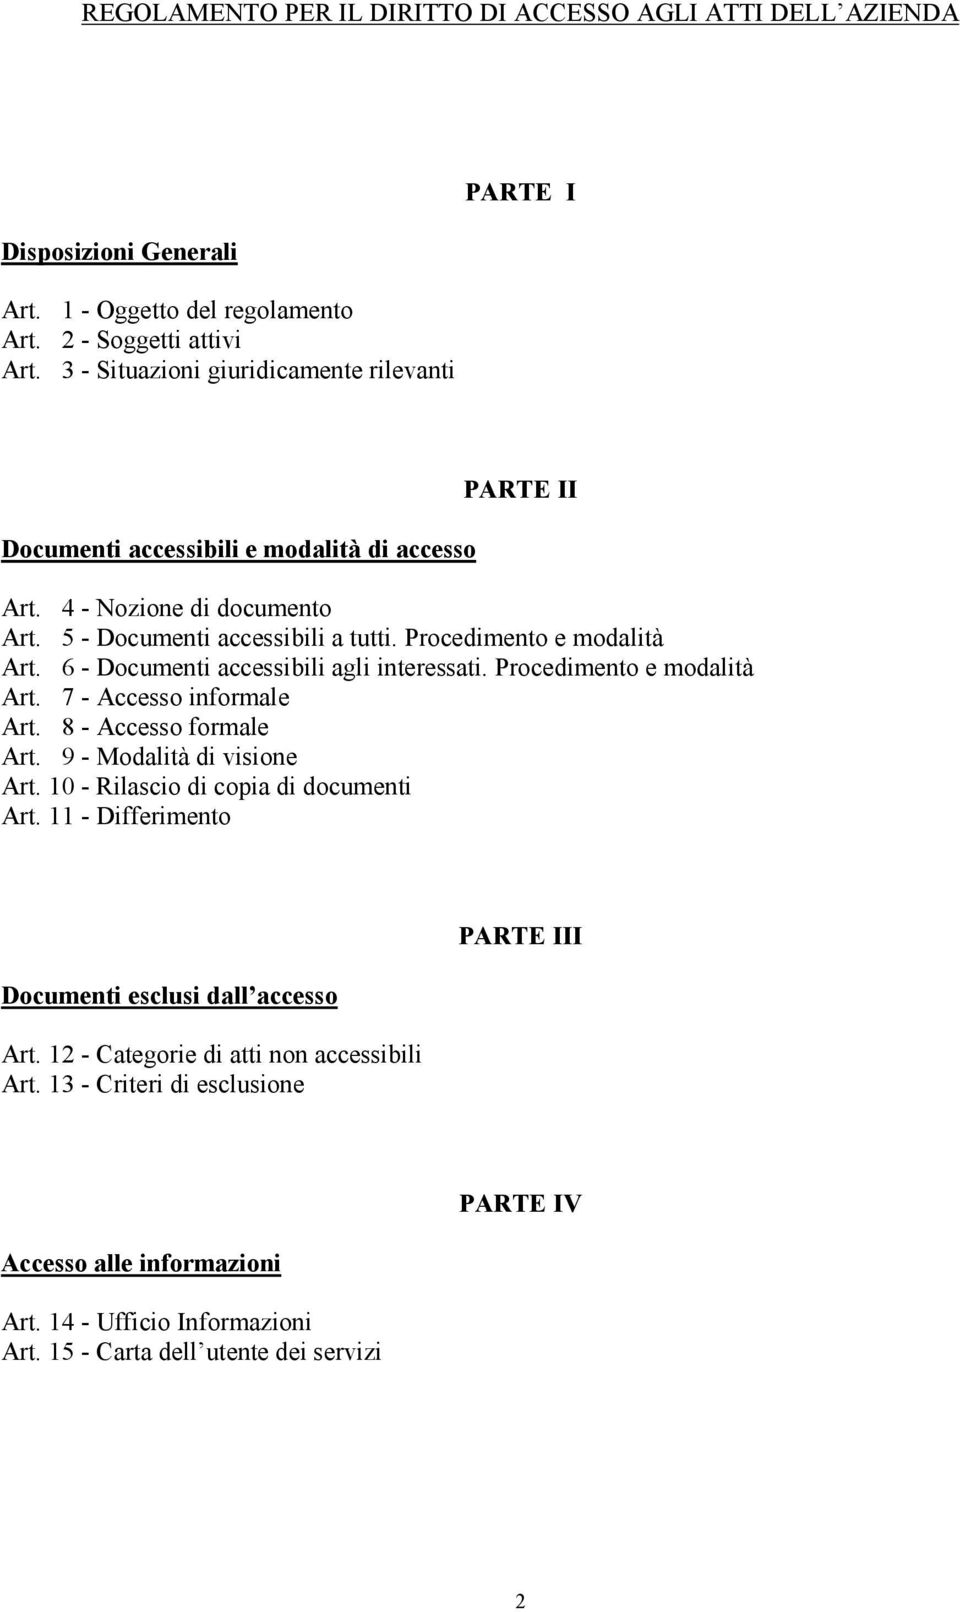 Procedimento e modalità Art. 6 - Documenti accessibili agli interessati. Procedimento e modalità Art. 7 - Accesso informale Art. 8 - Accesso formale Art. 9 - Modalità di visione Art.